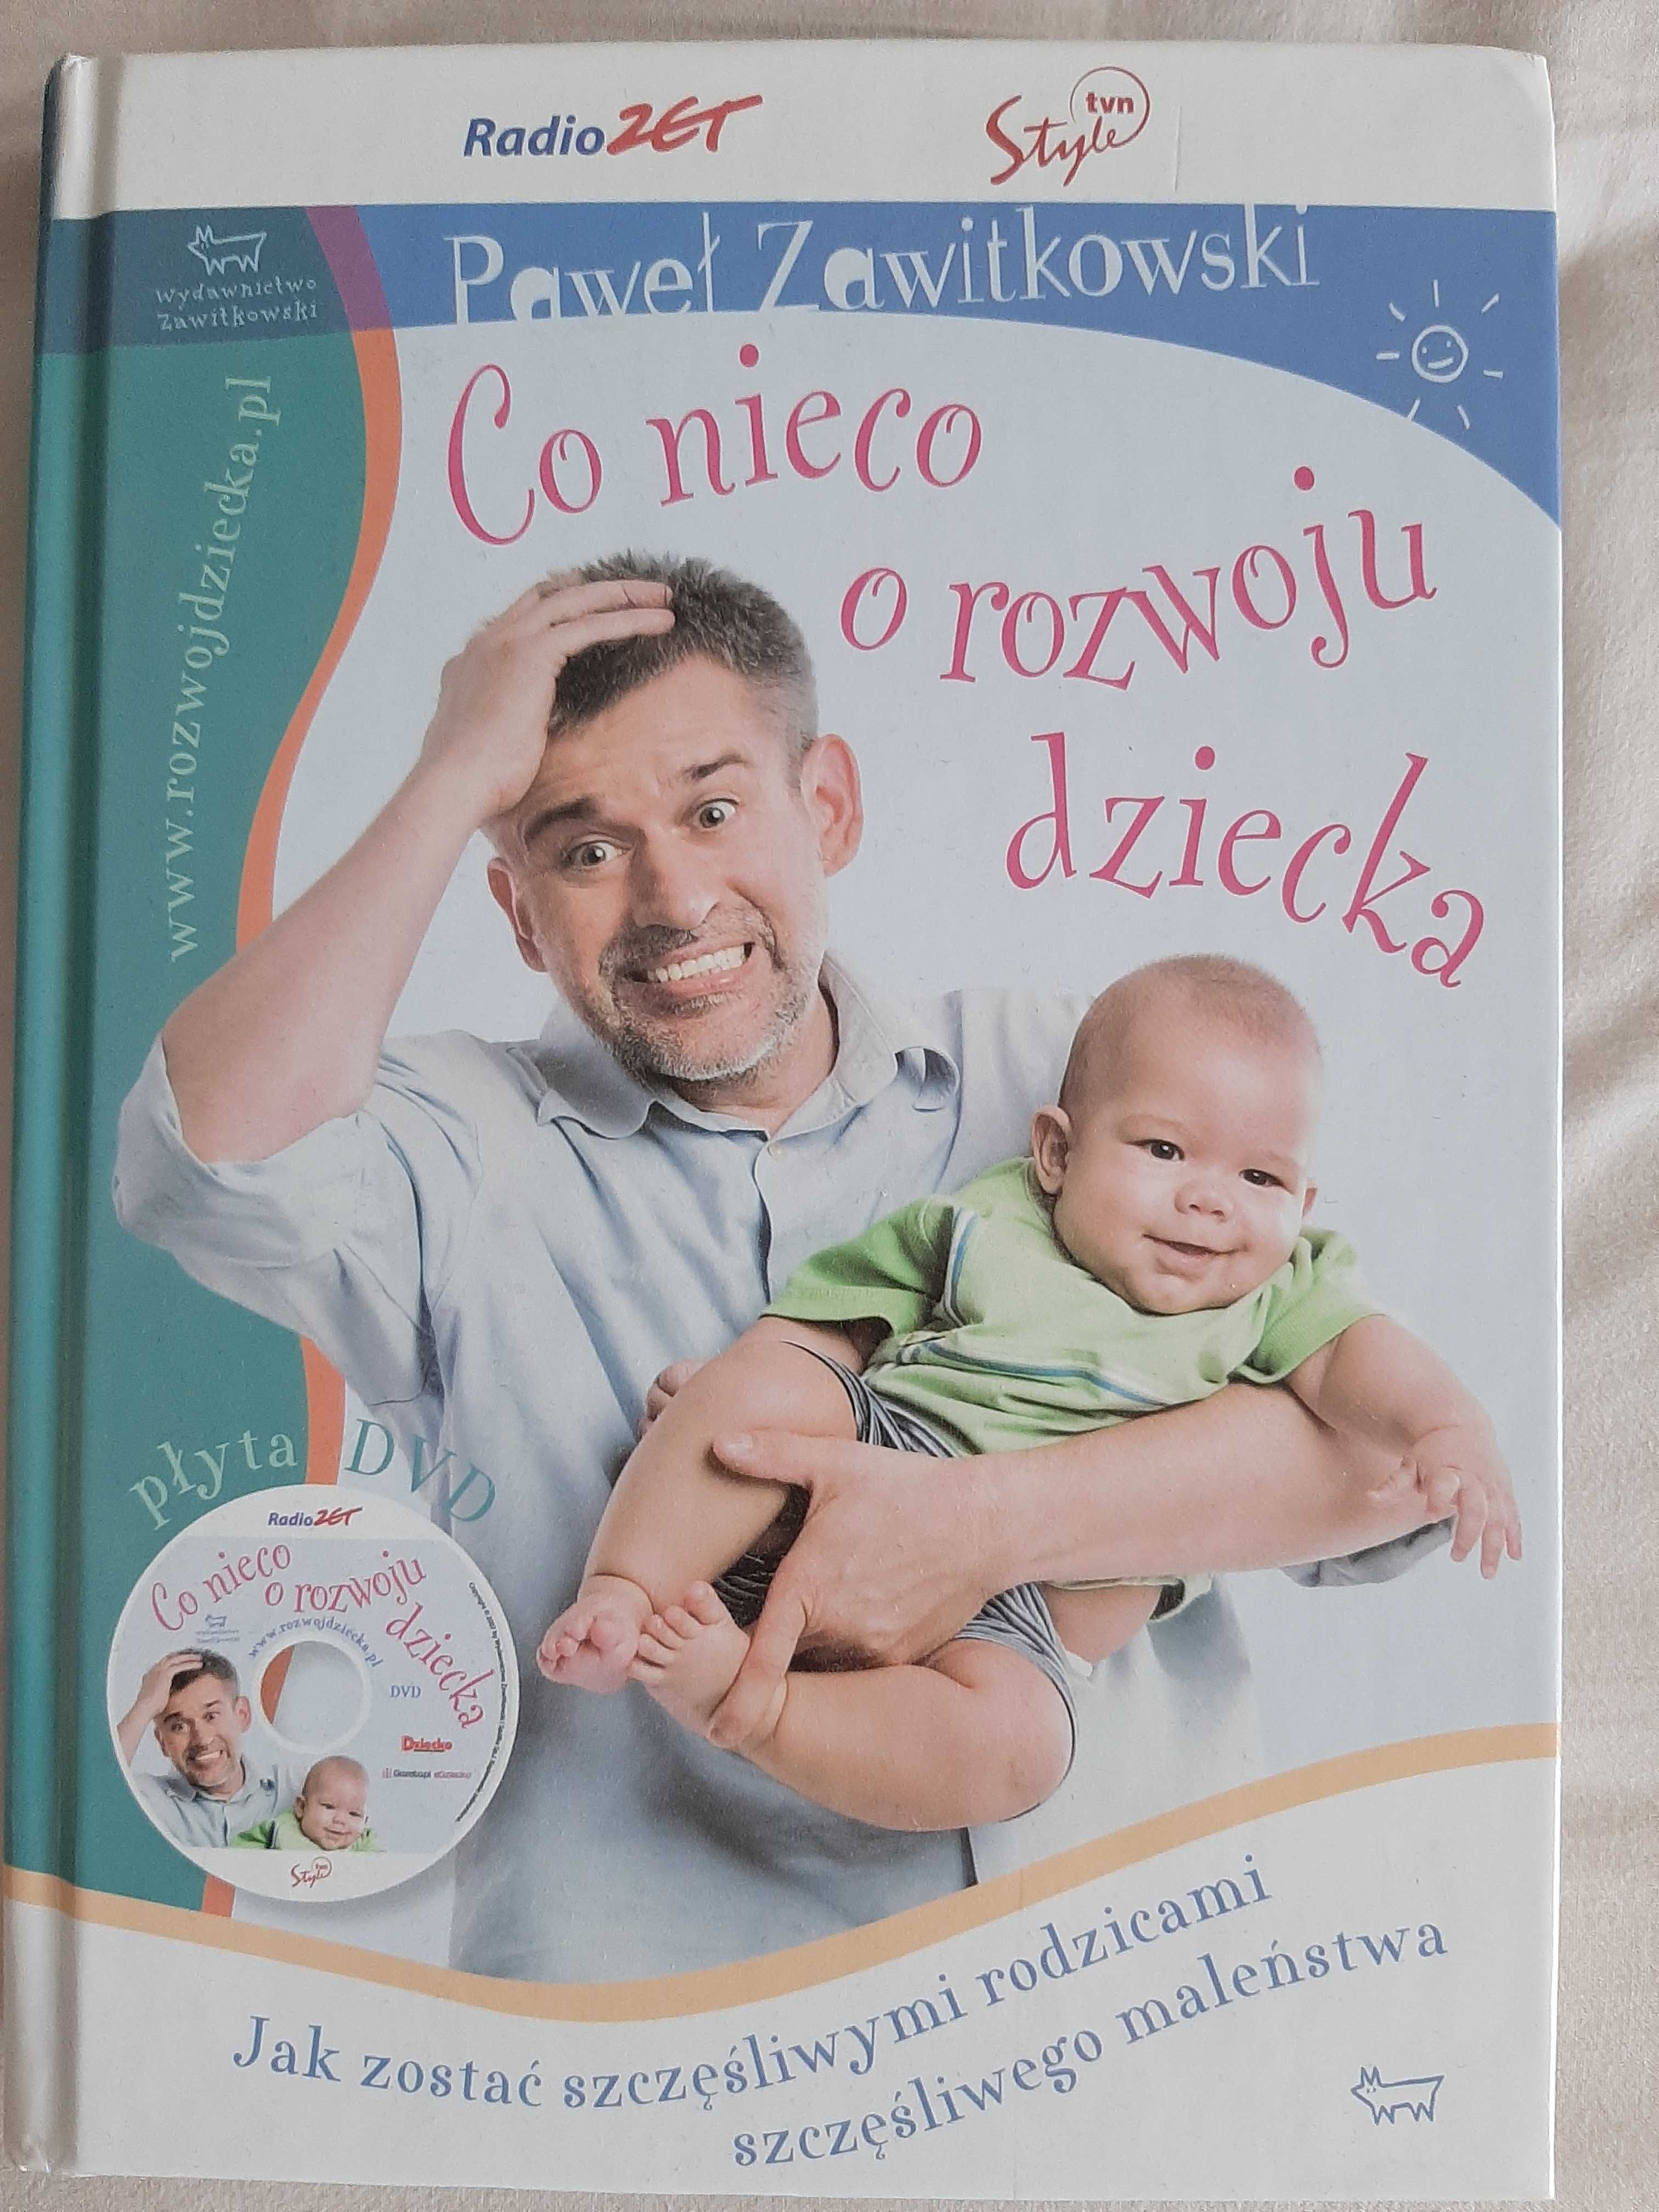 Paweł Zawitkowski „Co nieco o rozwoju dziecka” książka i DVD